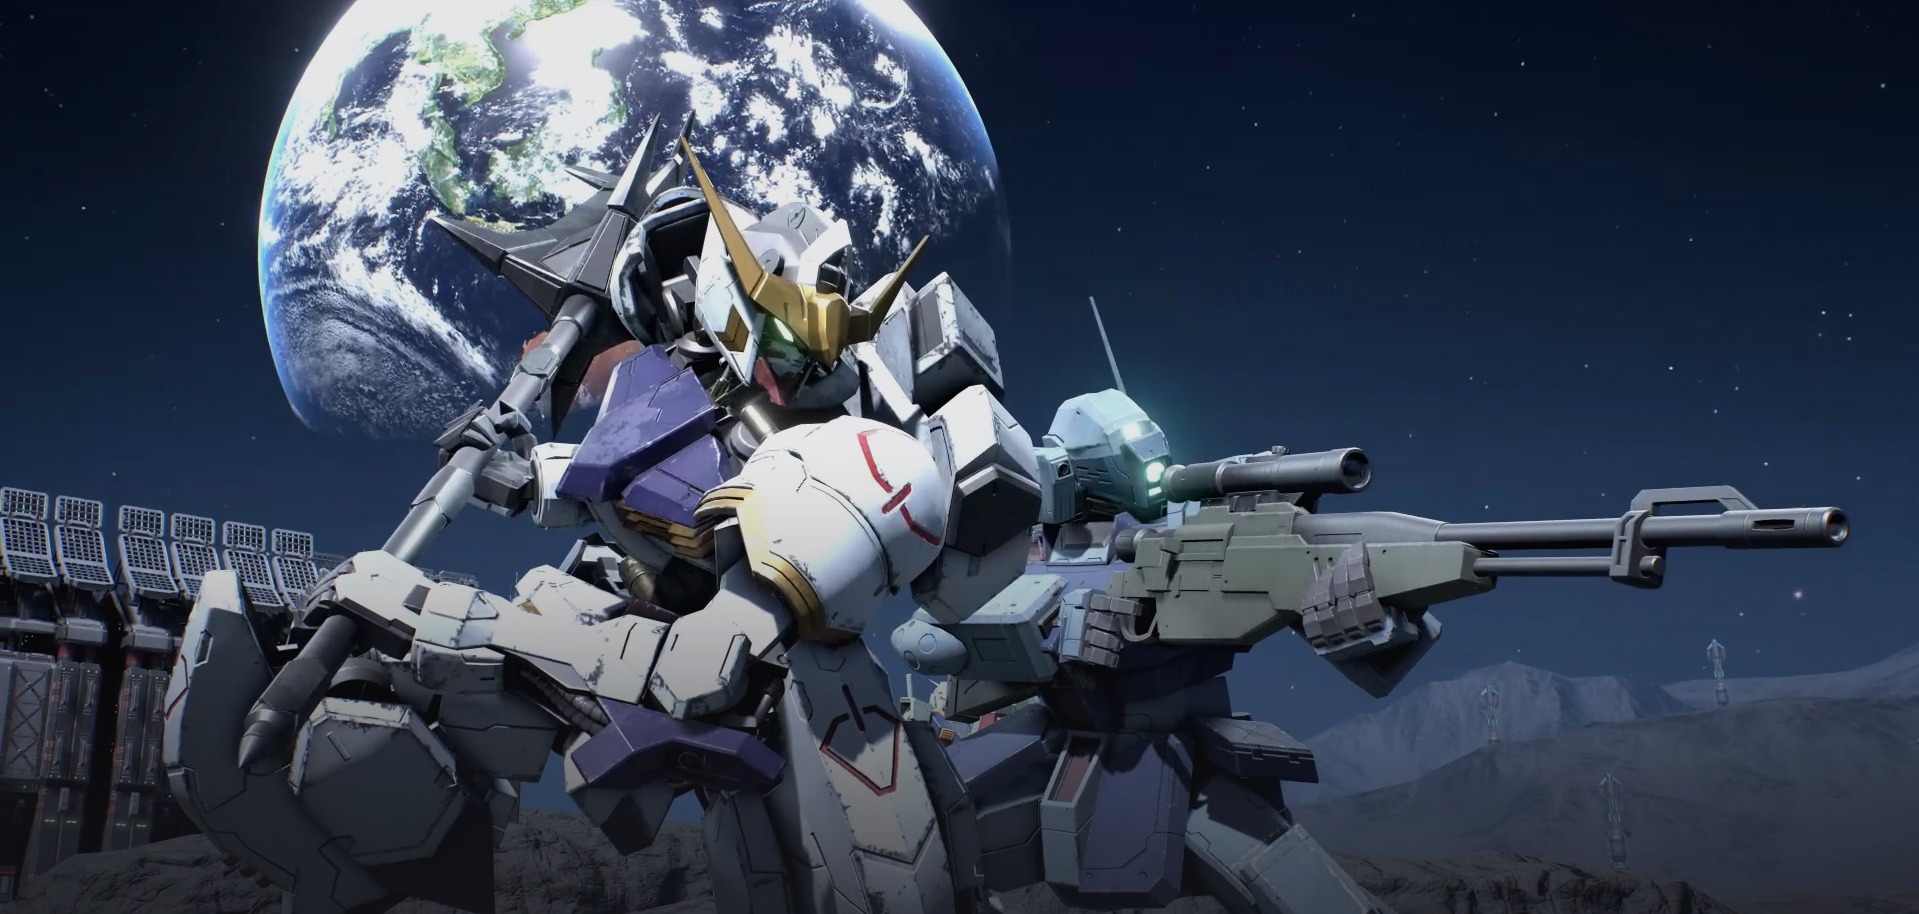 W tym artykule omówiliśmy nową grę Gundam Evolution, klon Overwatch, jak mówią niektórzy, jak można w nią grać, i datę premiery.